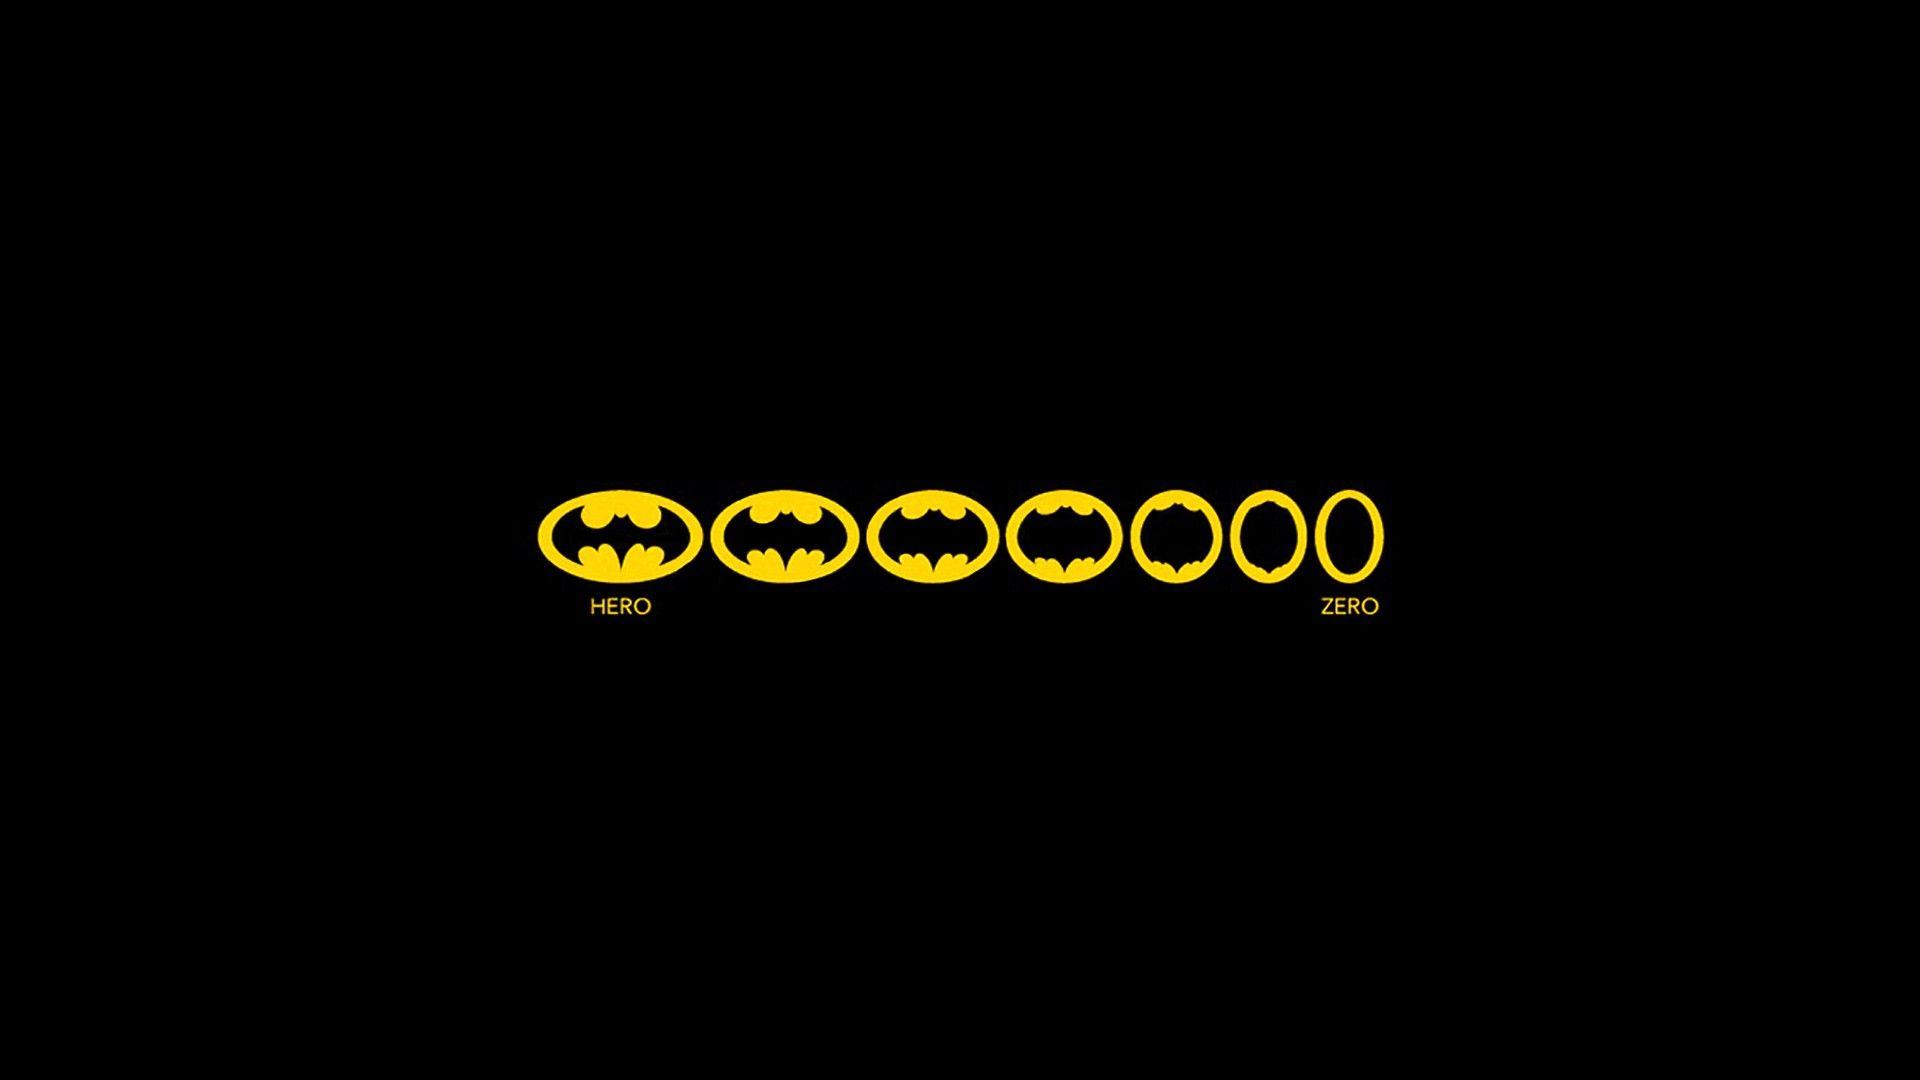 Wallpaper.wiki Batman Funny Logo PIC WPE008298